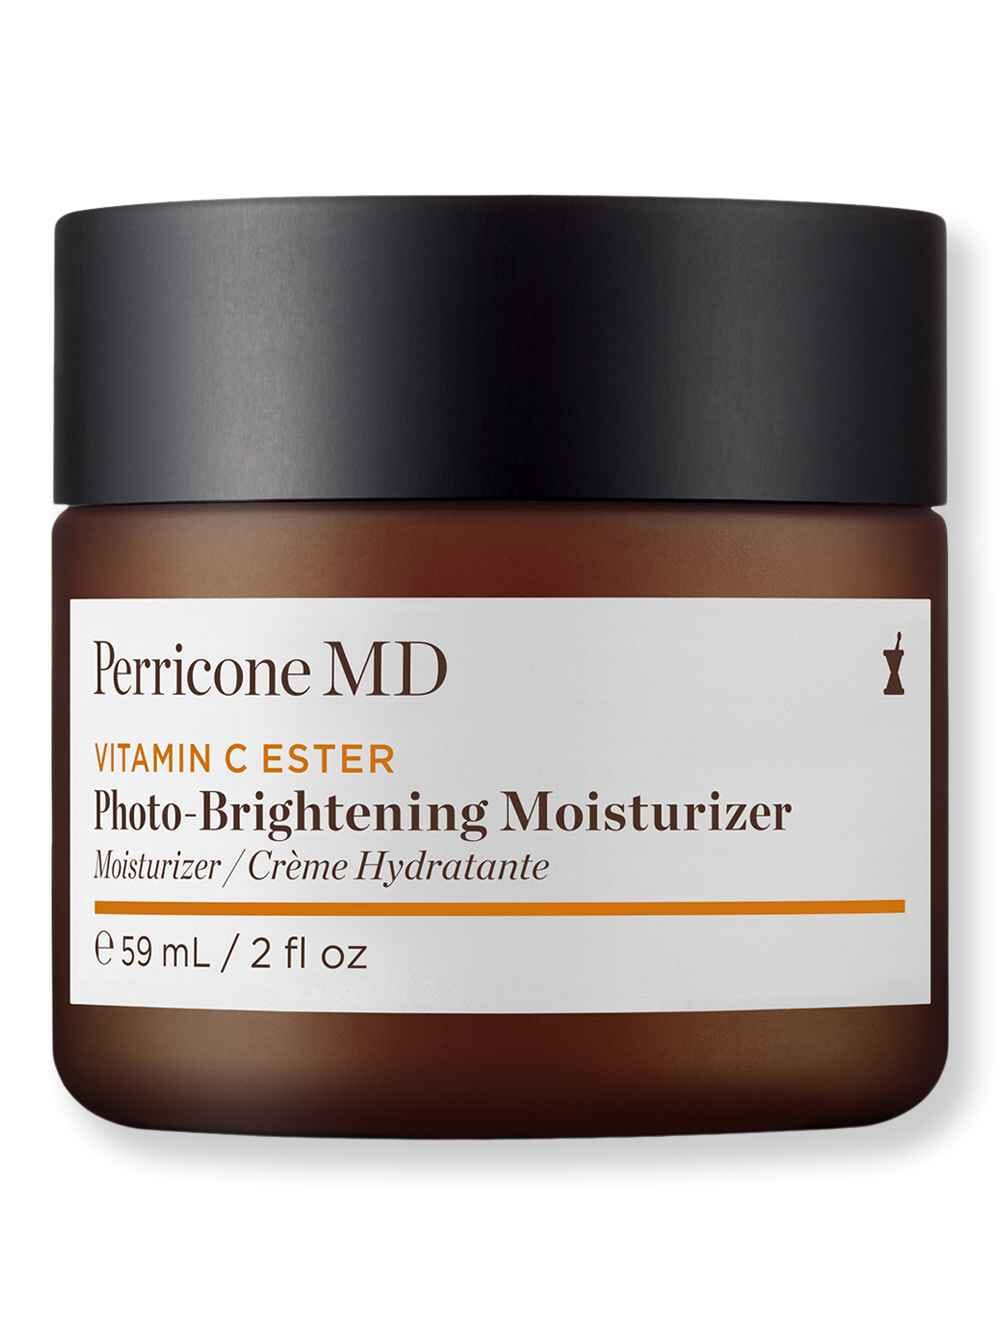 Perricone MD Perricone MD Vitamin C Ester Photo-Brightening Moisturizer SPF 30 2 oz59 ml Face Moisturizers 